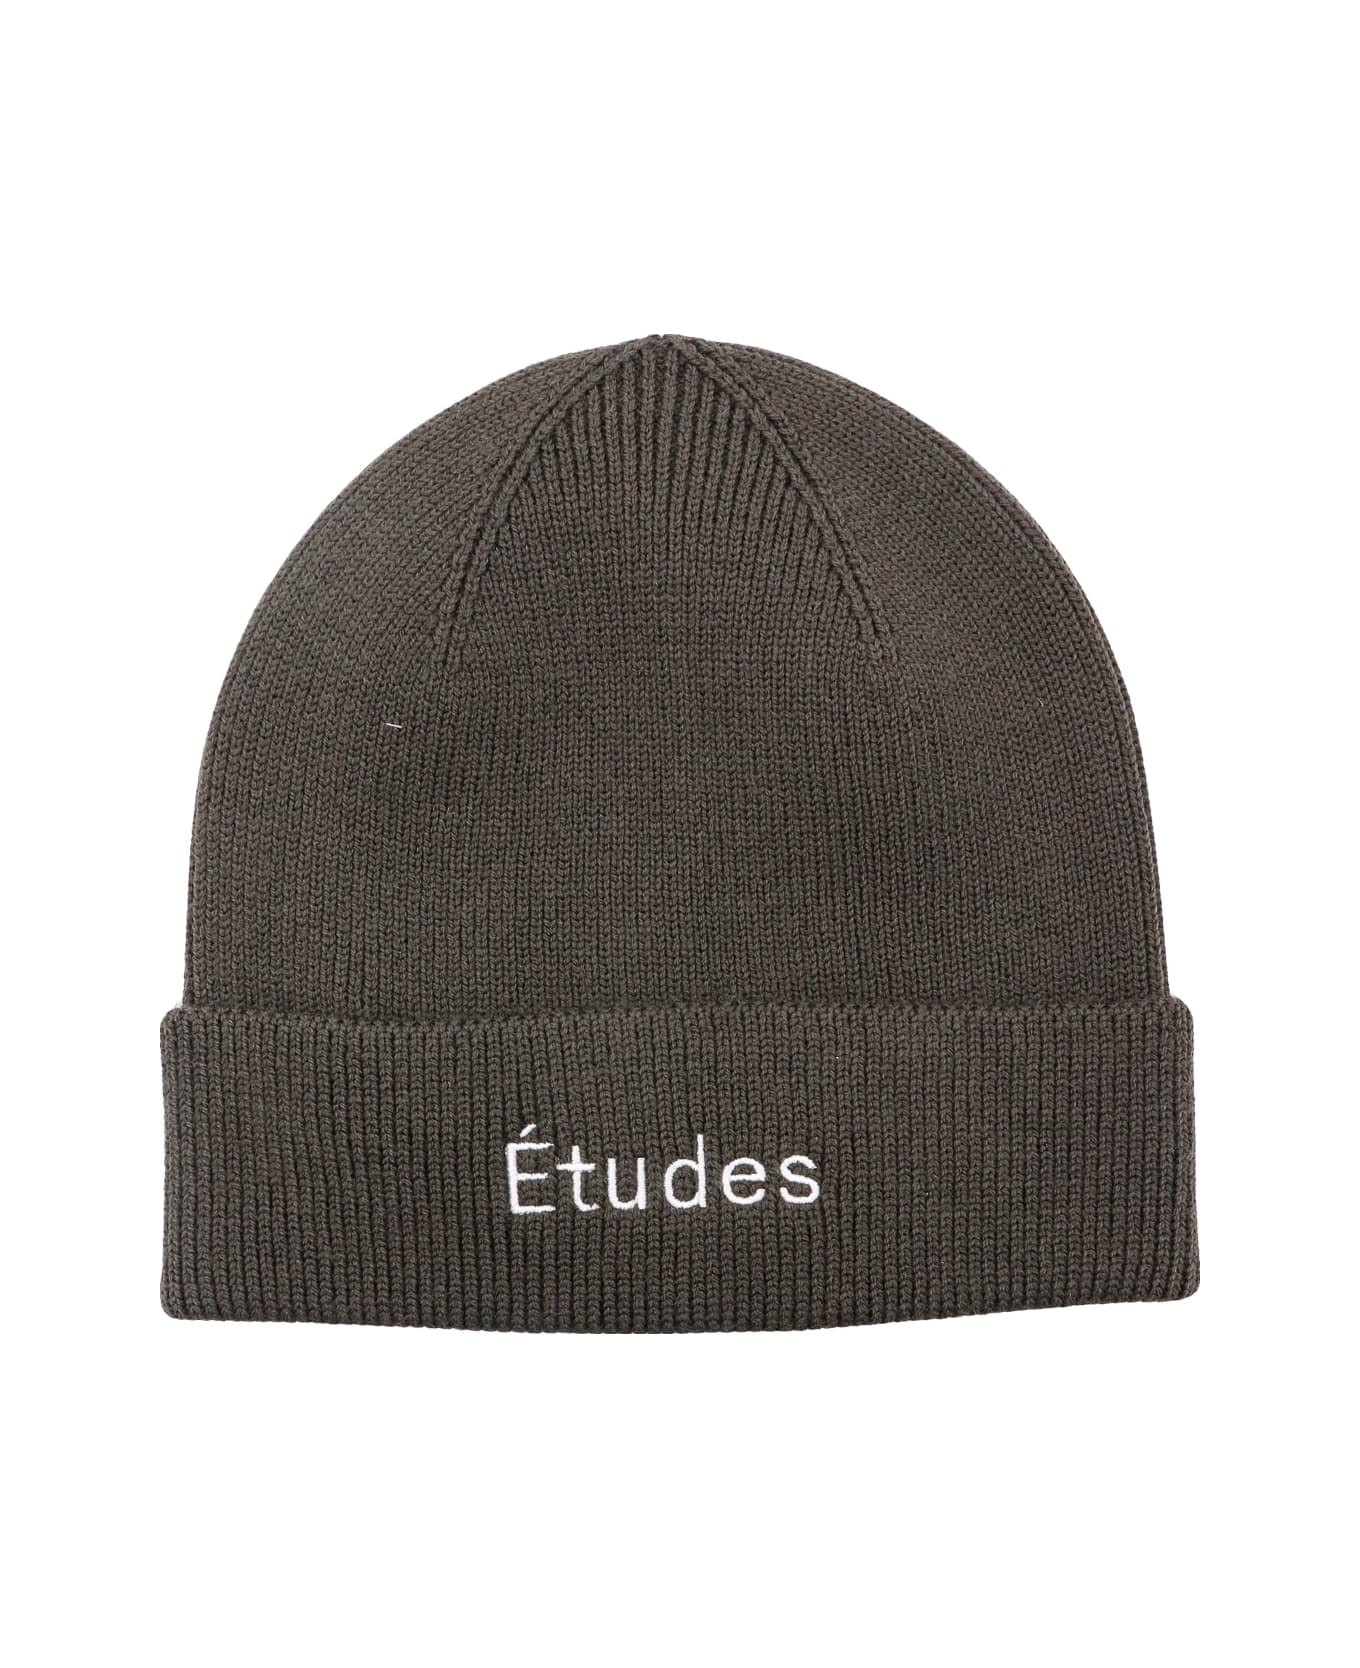 Études Hat - Green 帽子